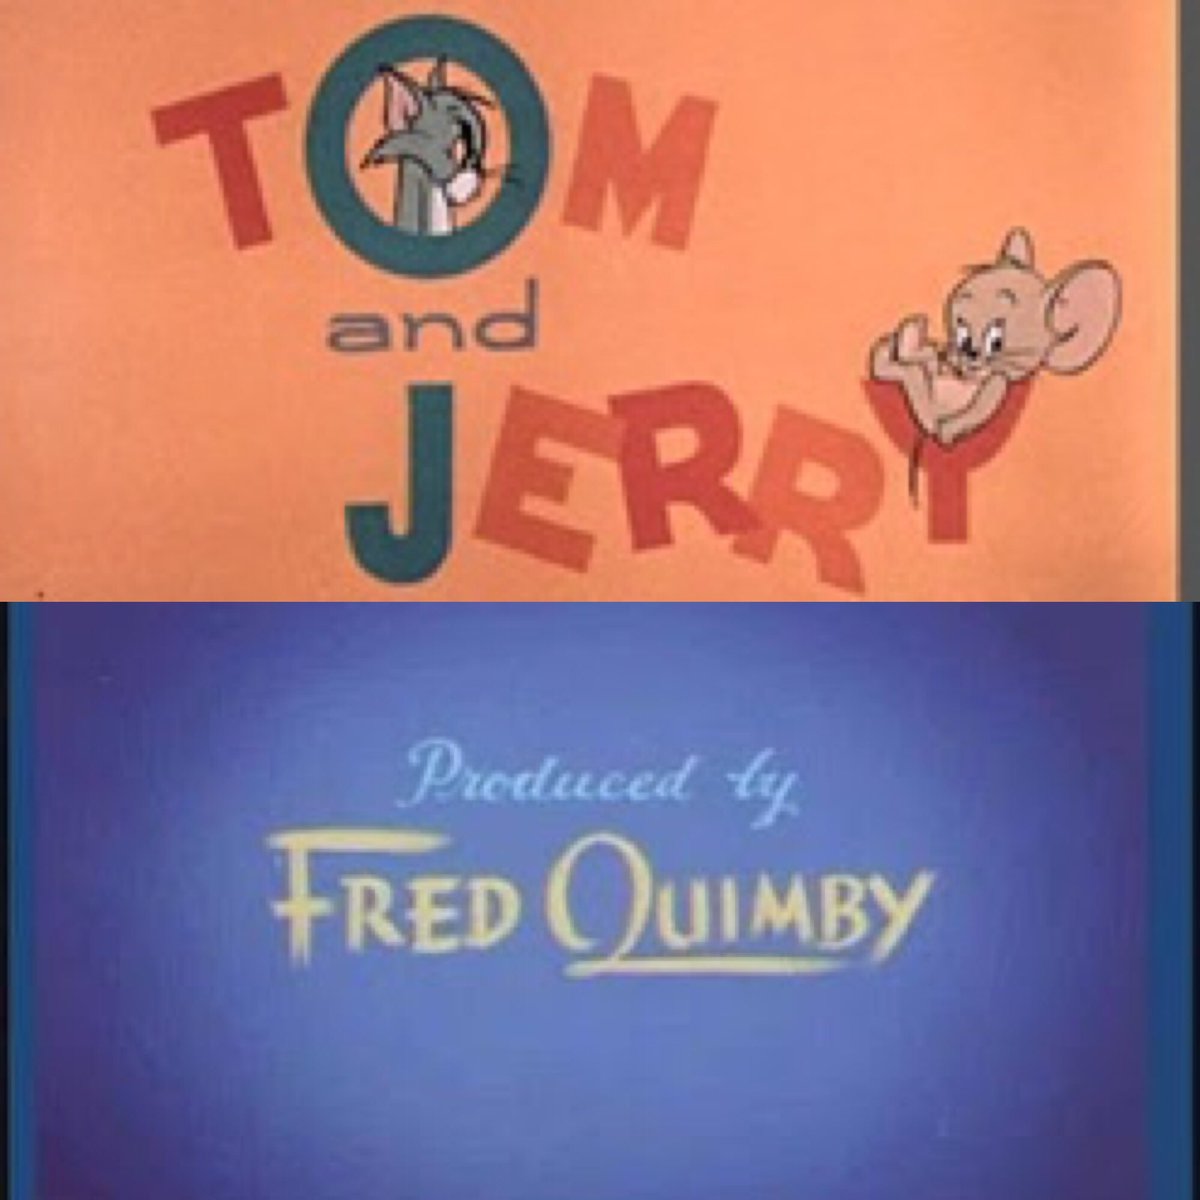  #LesCinéastesDuHangarRangée 2 :34 - FRED QUIMBY31 juillet 1886 - 16 septembre 1965(U.S.A.)Producteur de films, notamment de films d’animationIl est surtout célèbre pour avoir produit les Tom et Jerry ou certains Tex AveryRattaché à la MGM